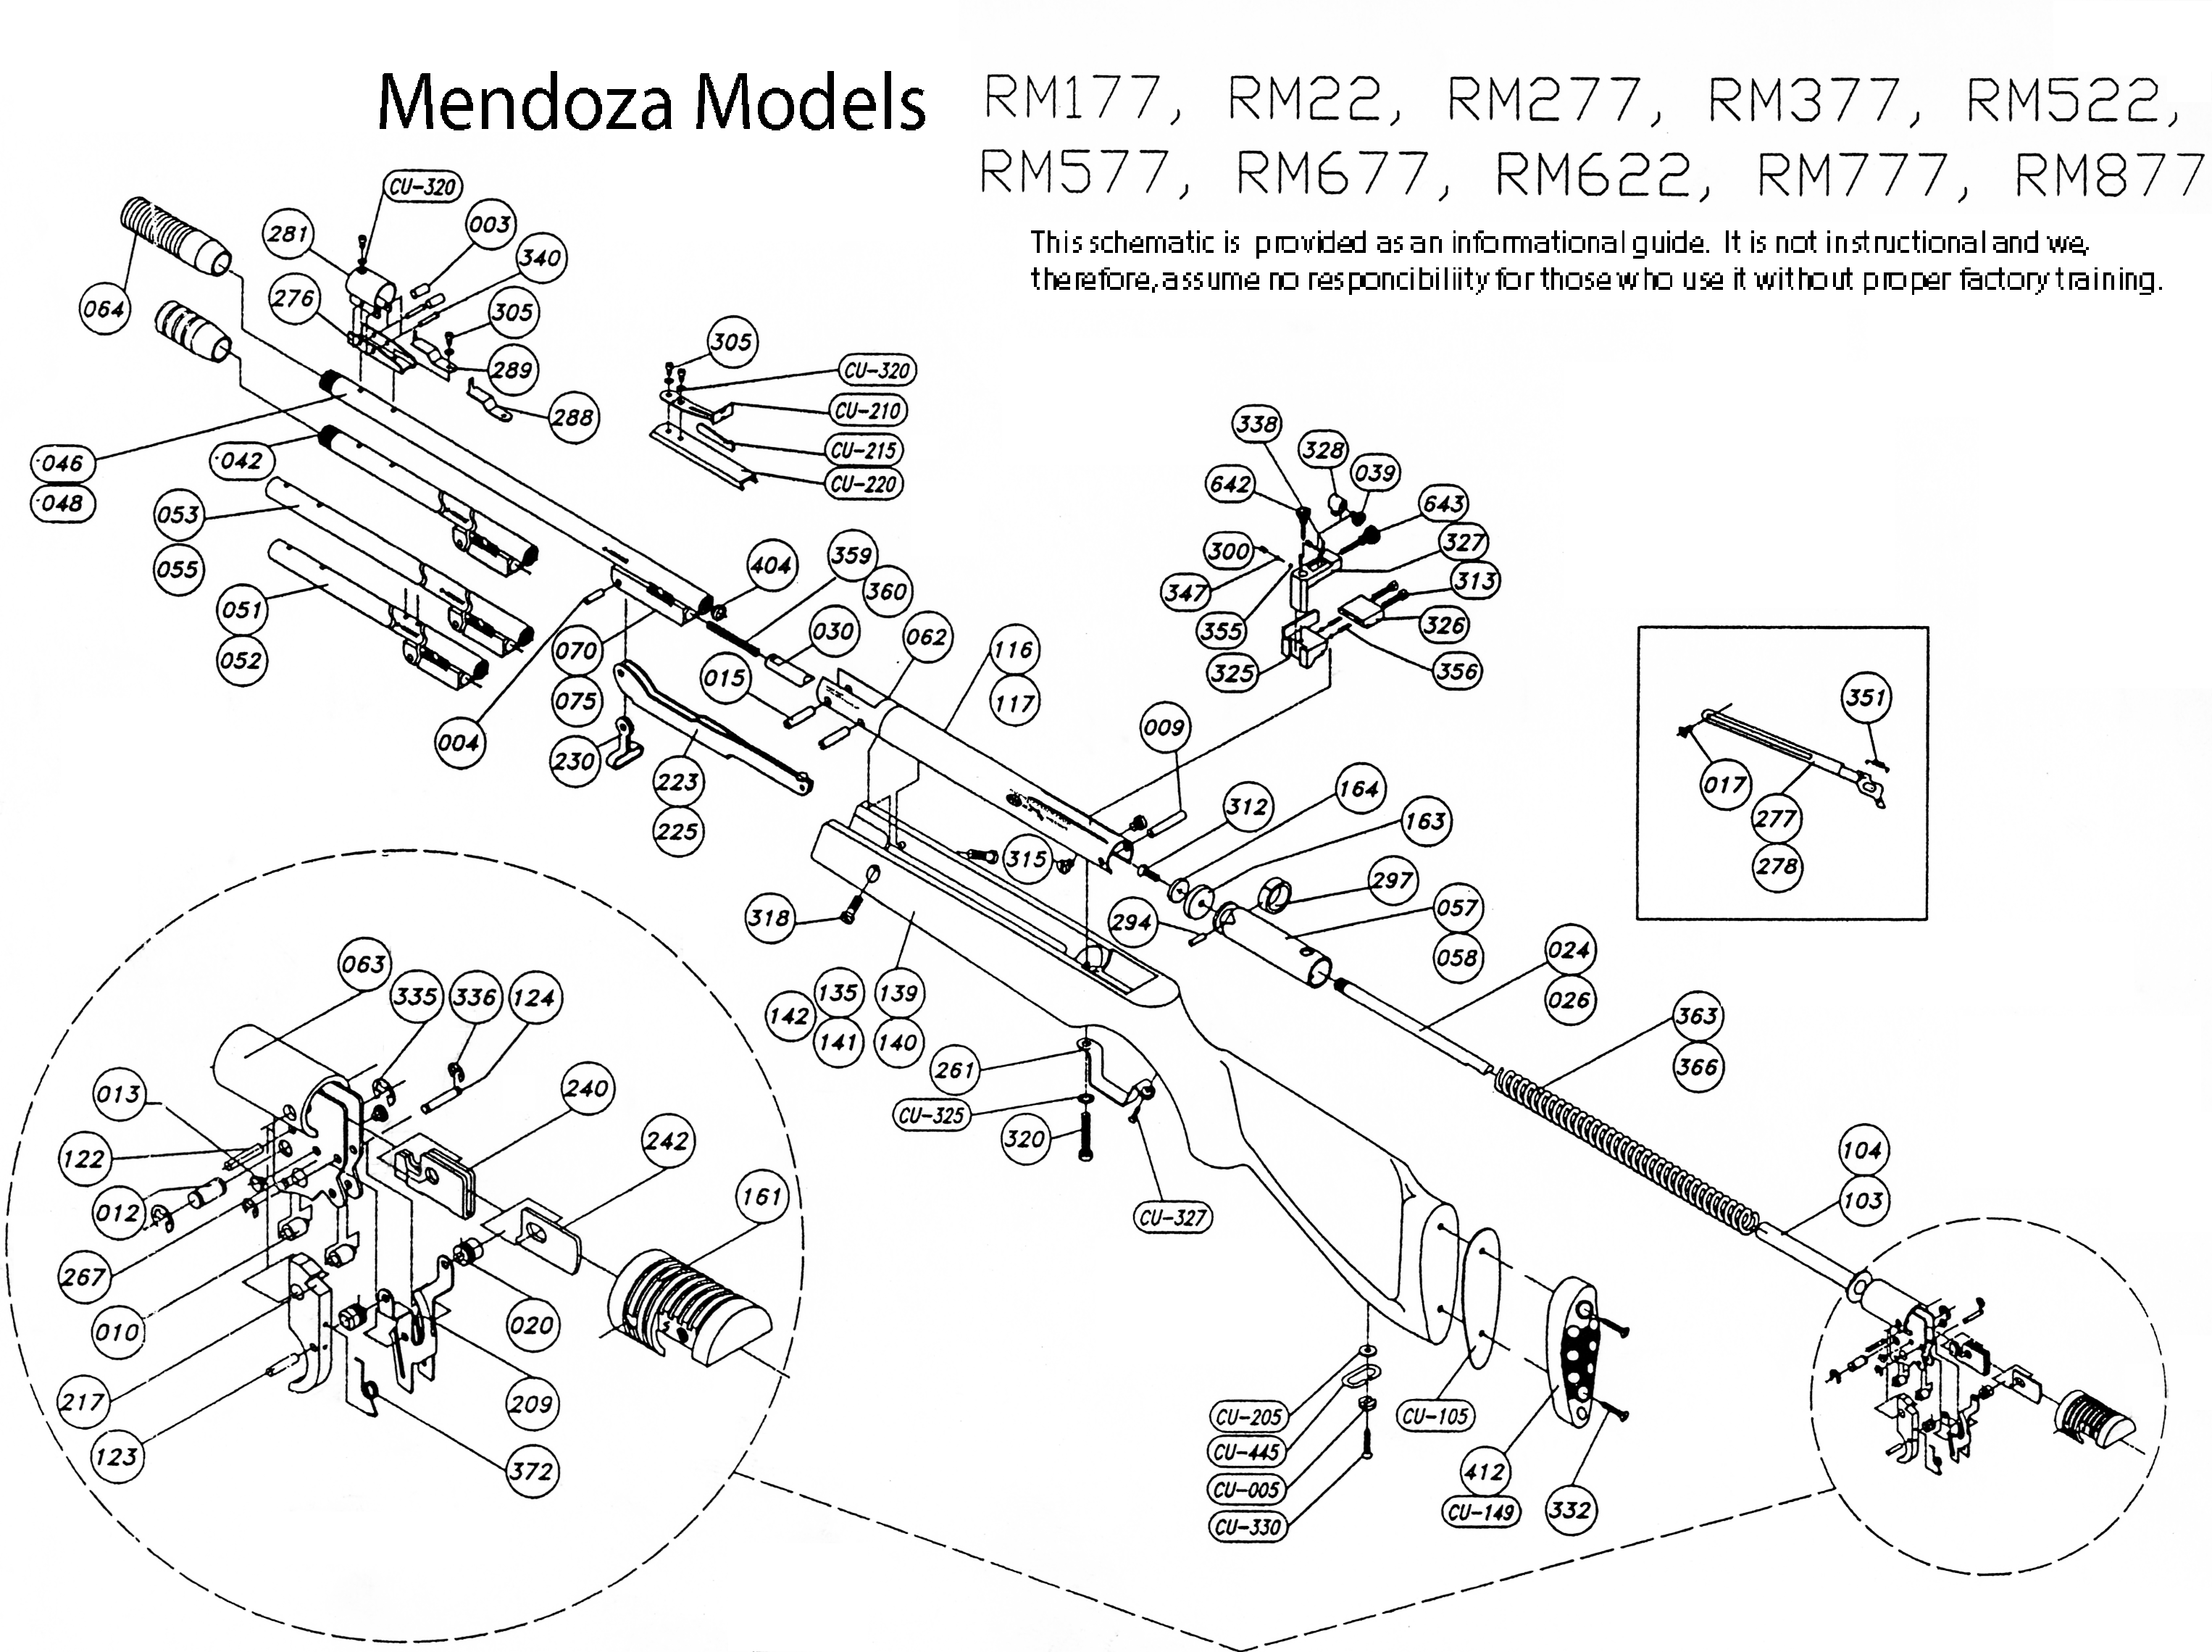 RM677 Schematic